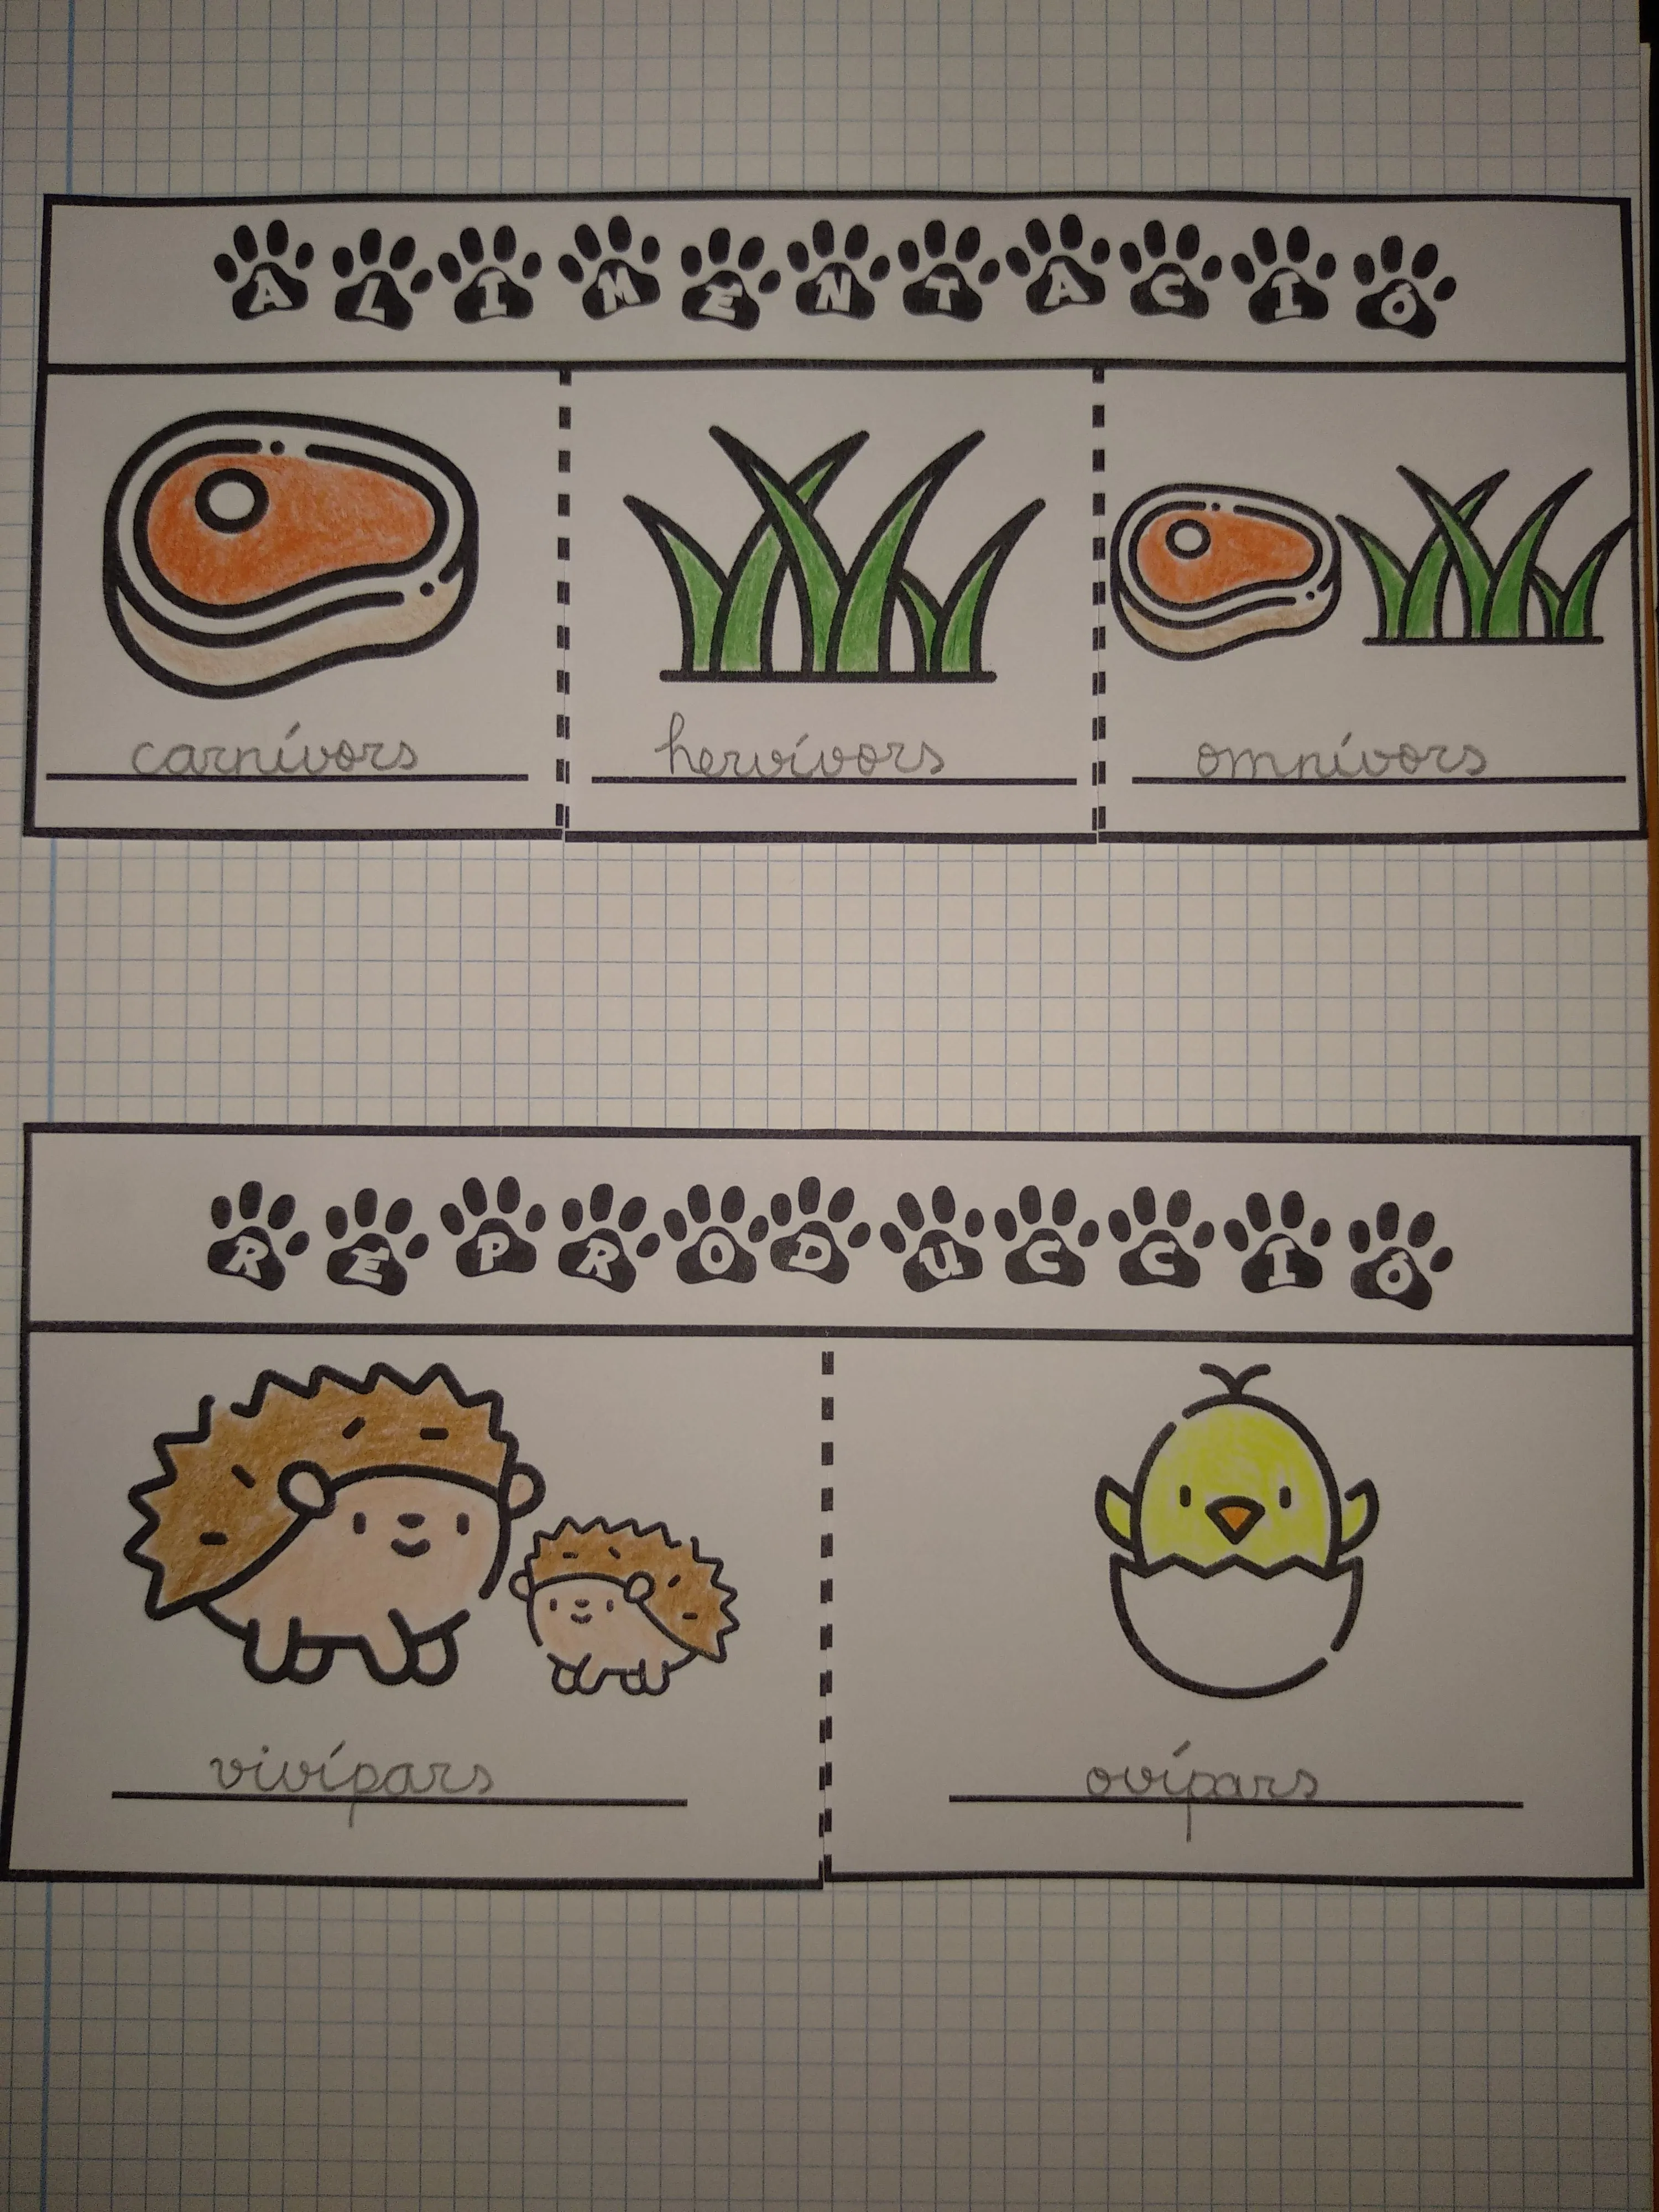 Alimentació i reproducció (animals)